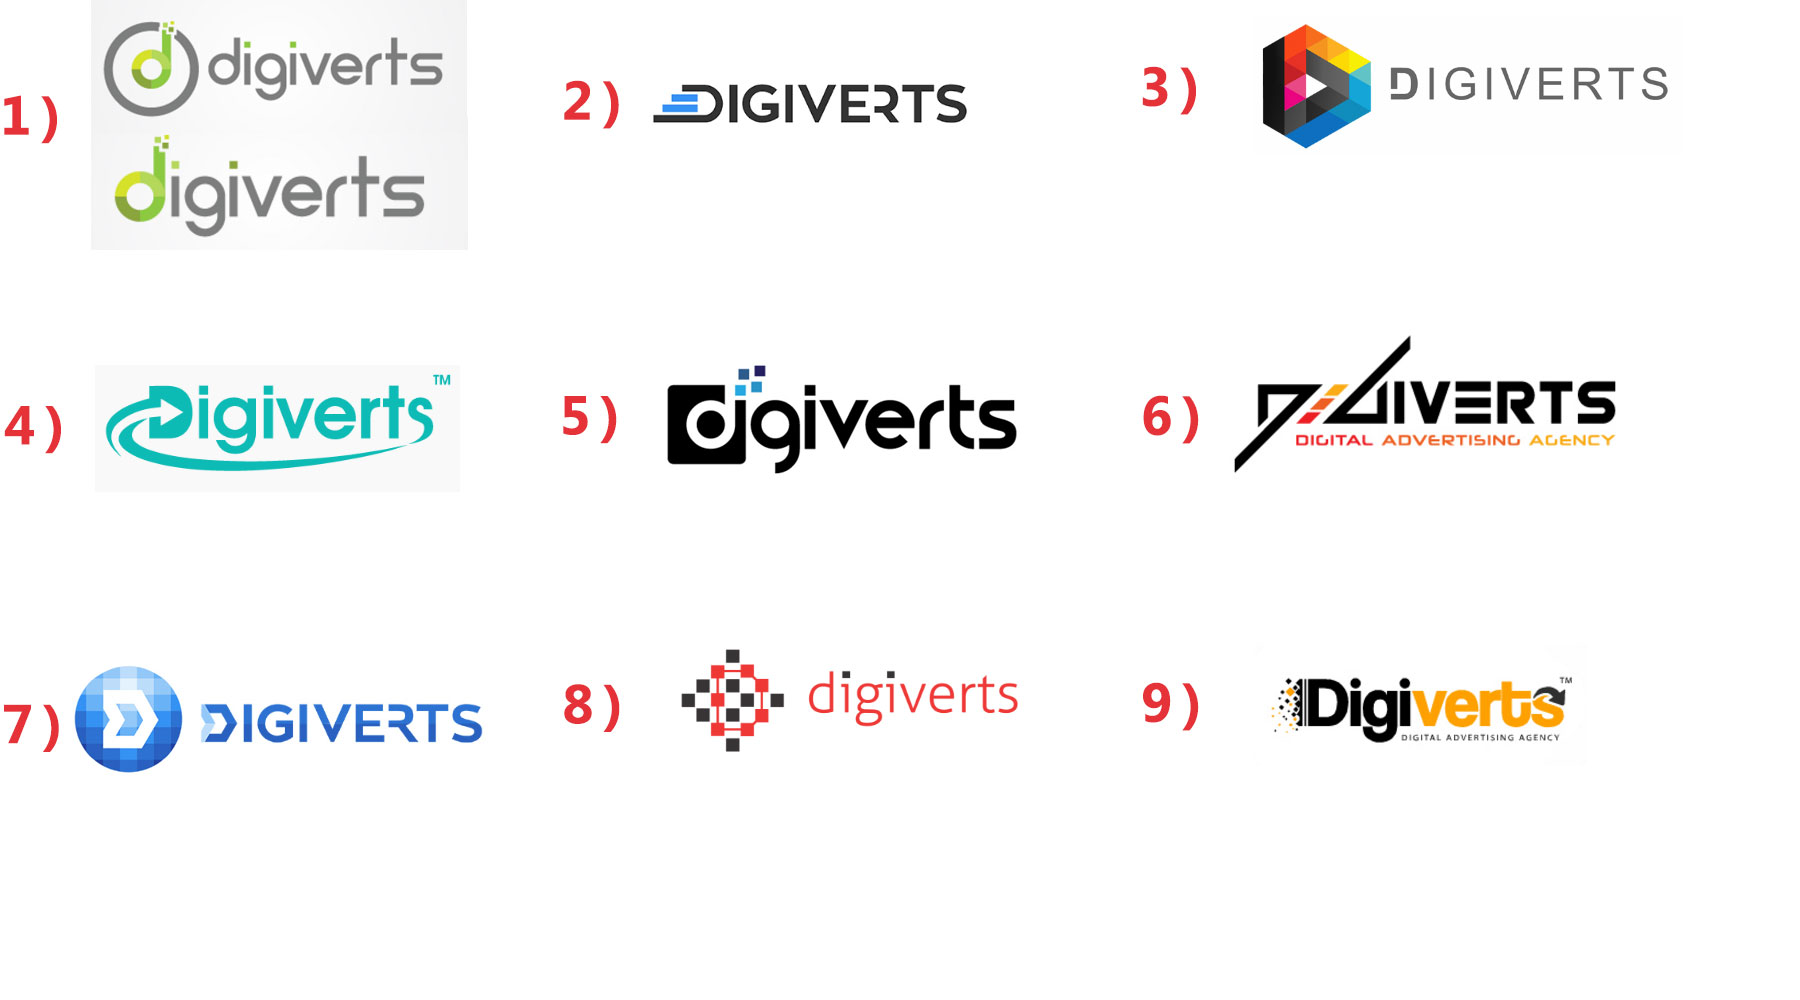 digiverts-logos.jpg